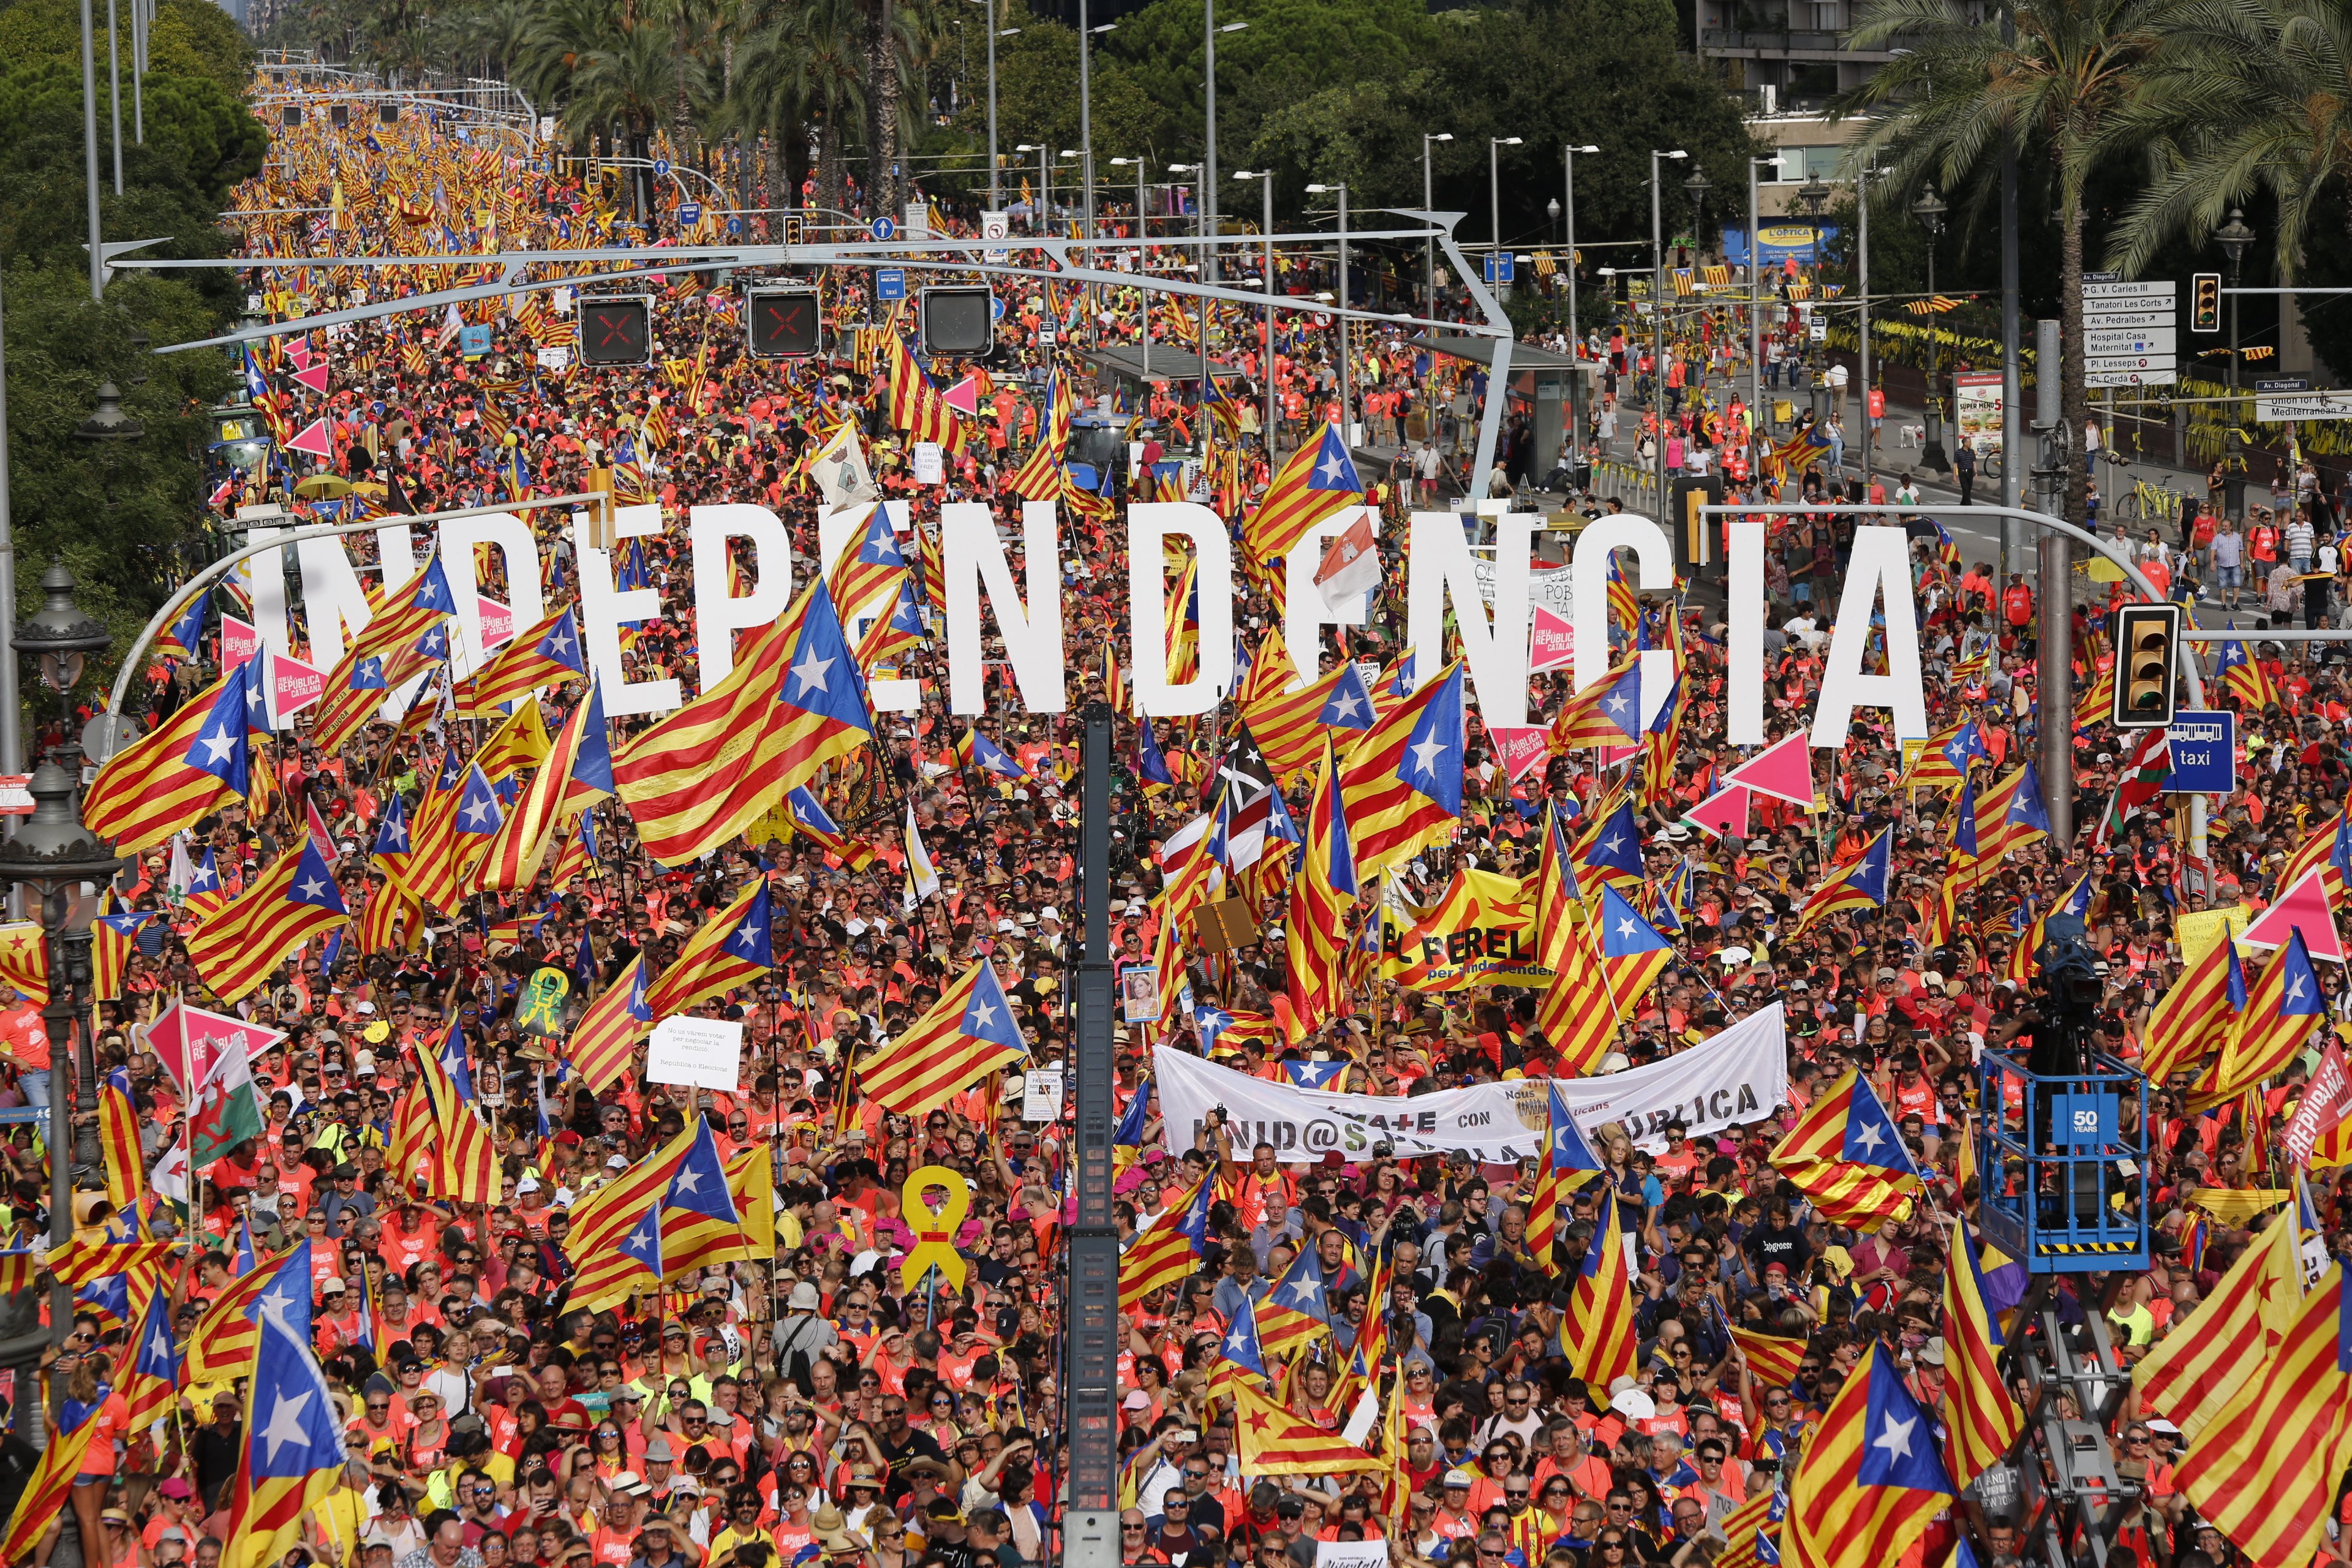 Solidaridat Catalana recurrirá a la justicia internacional en defensa de la ILP por la independencia